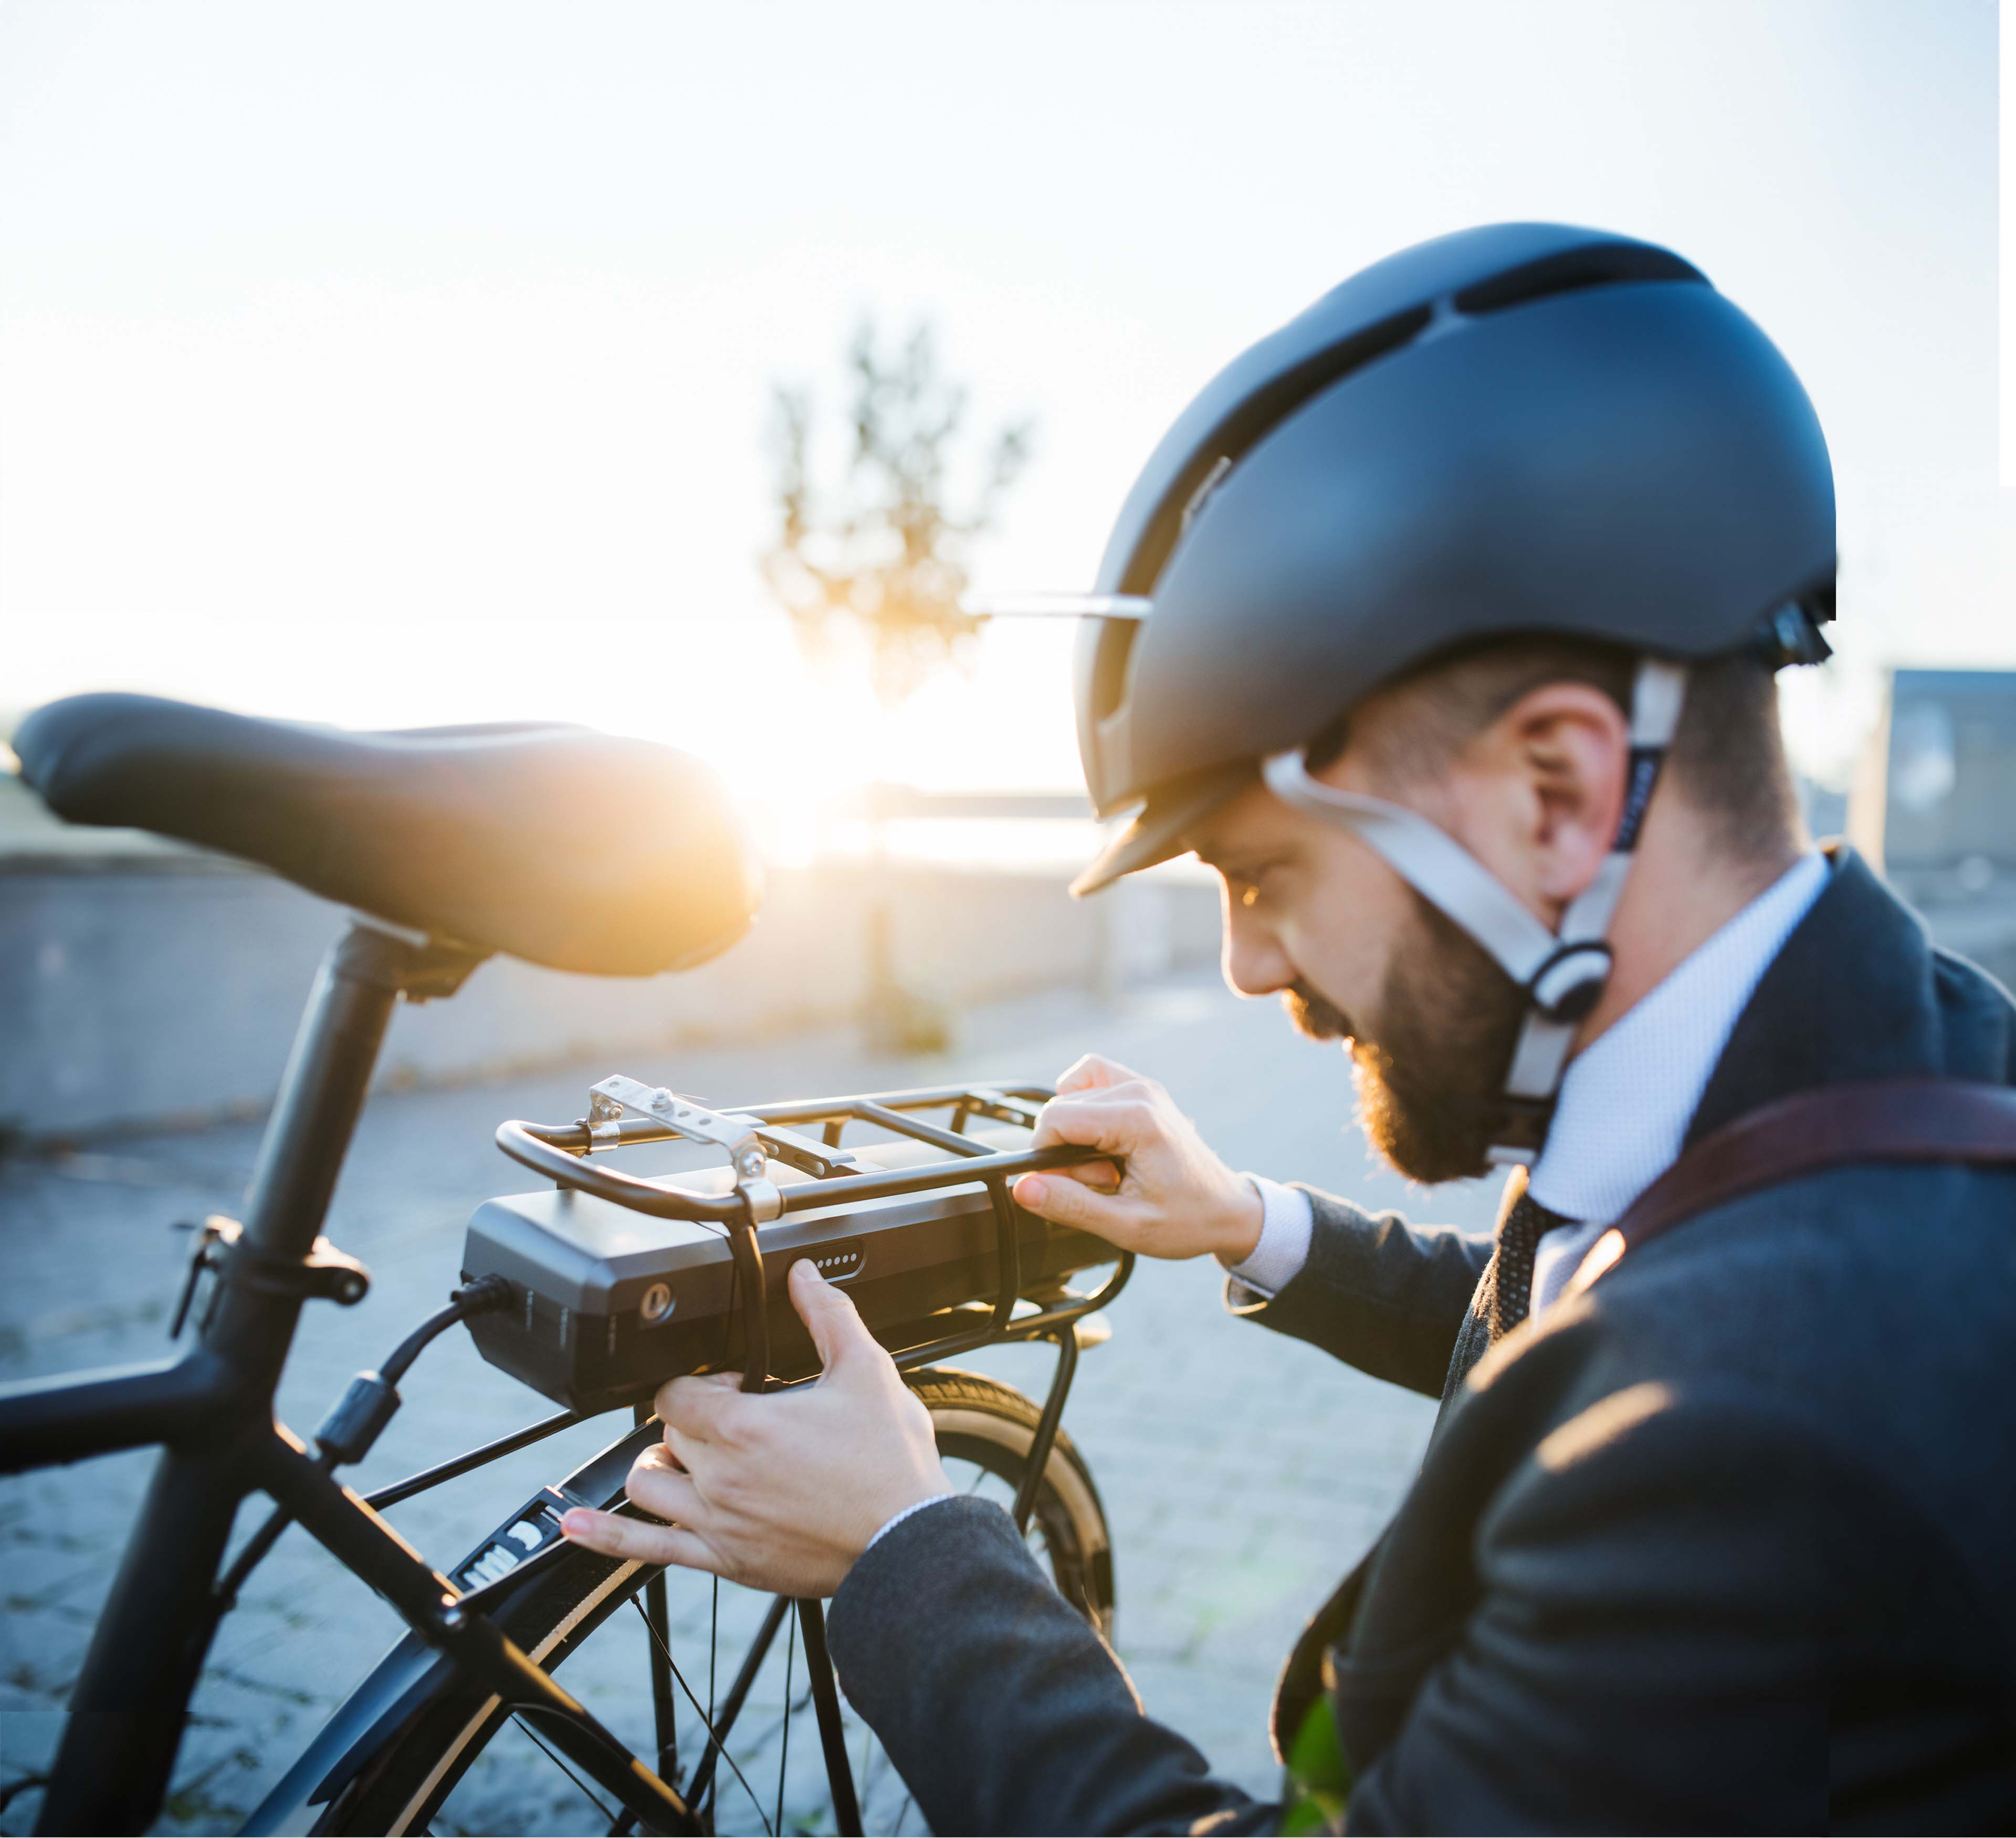 Un uomo vestito in giacca e cravatta, con un casco da bici in testa, è in ginocchio e guarda da vicino il motore di una bici elettrica. 